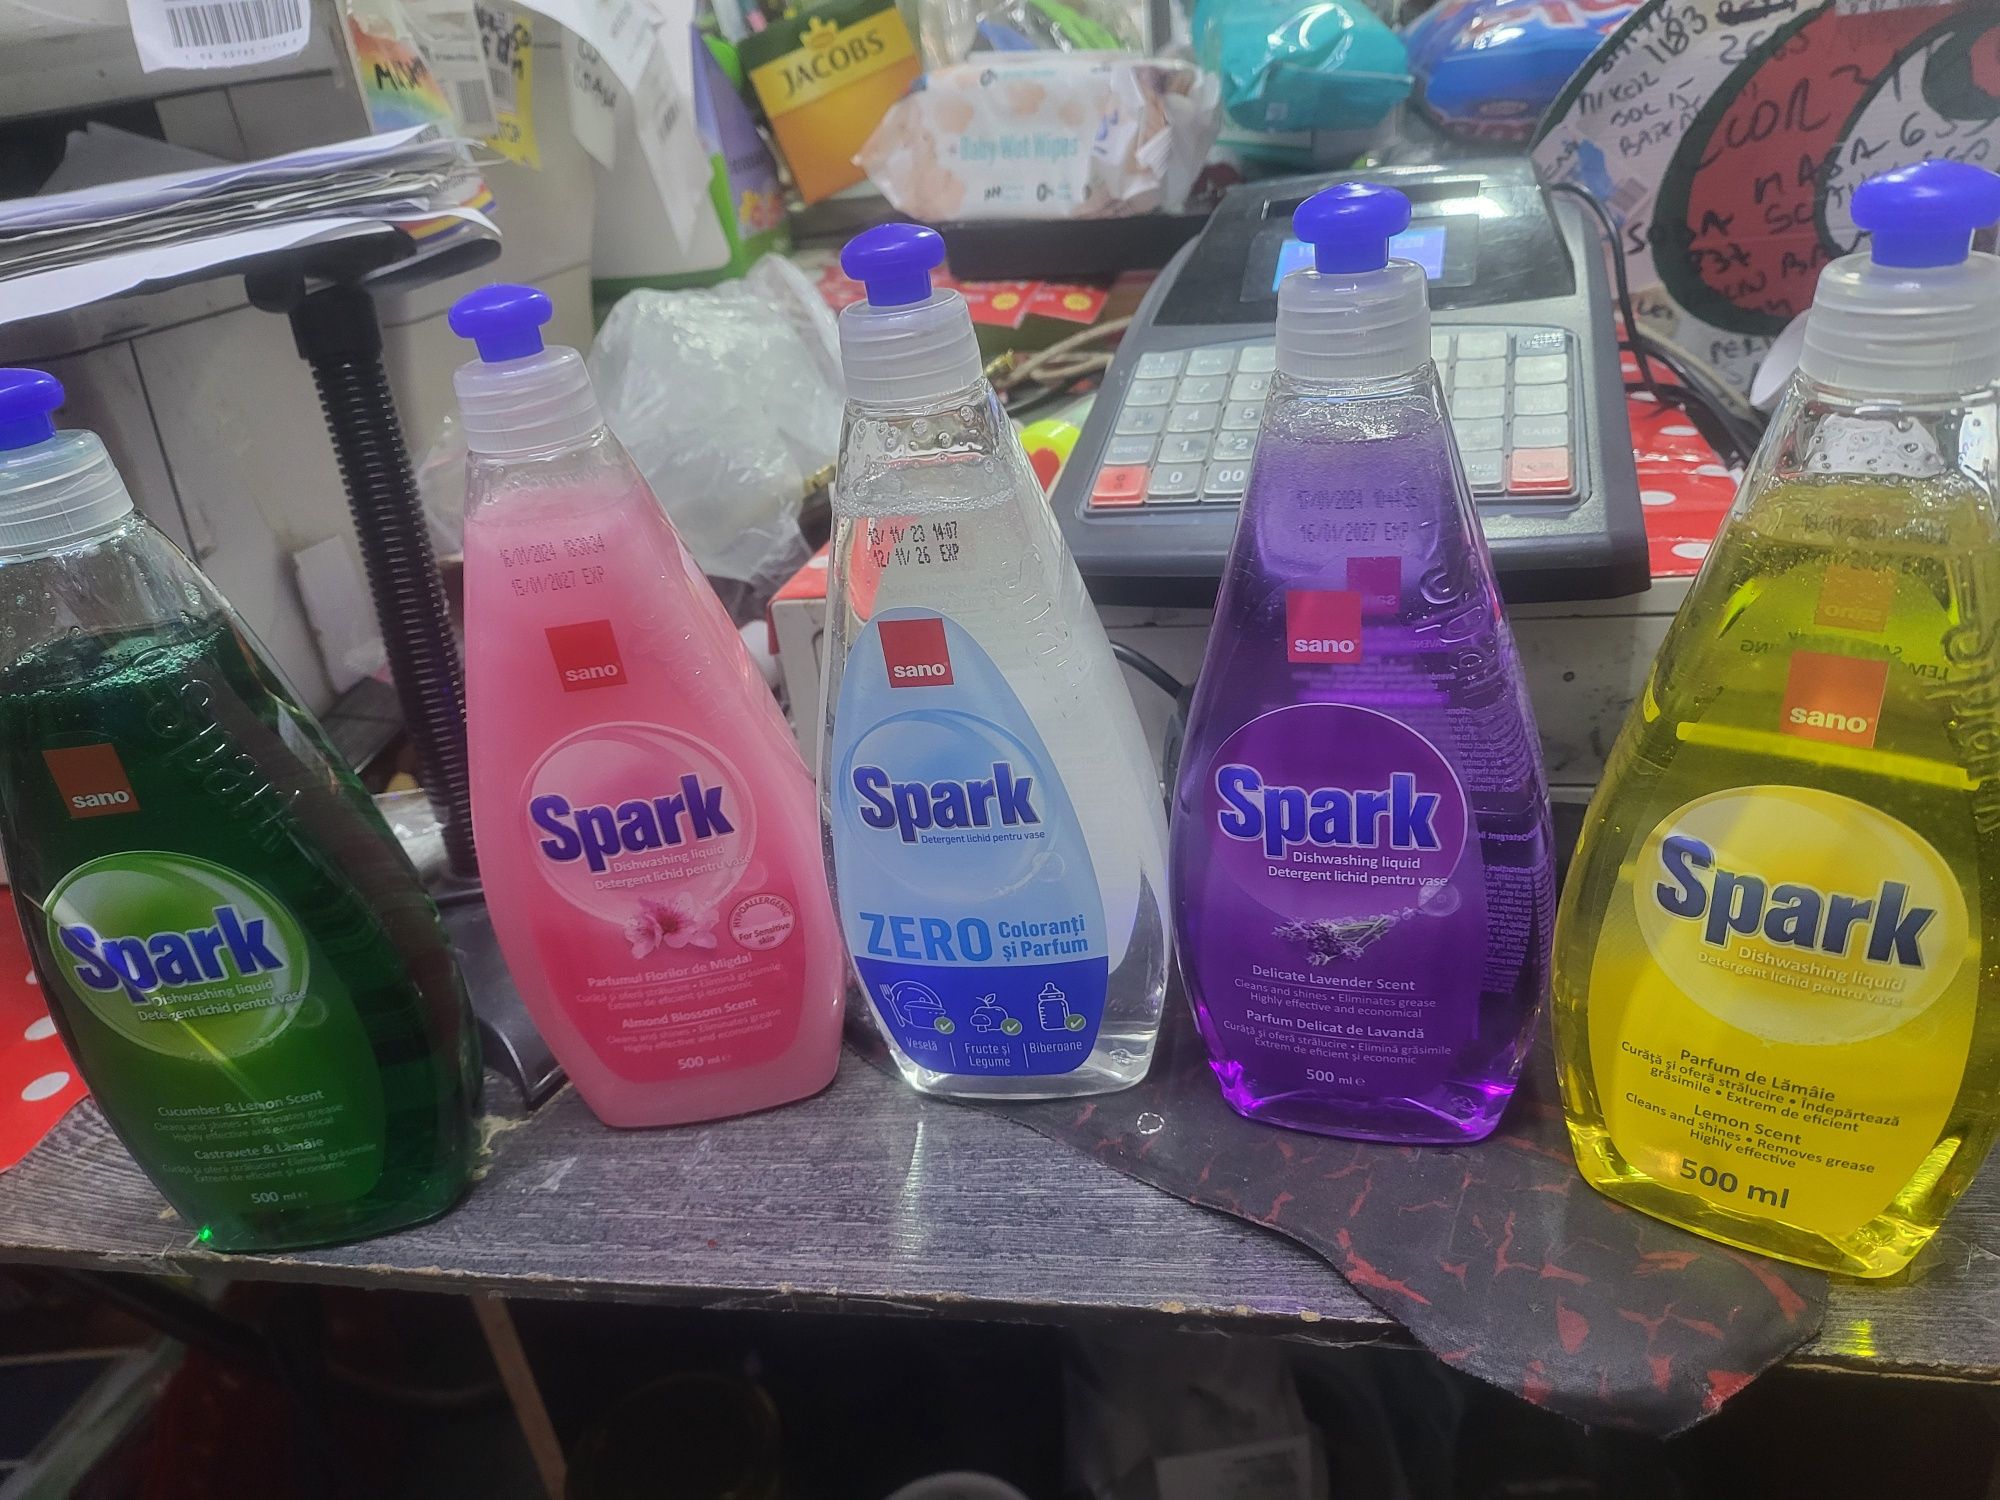 Sano Spark vase 0,5L gama completa